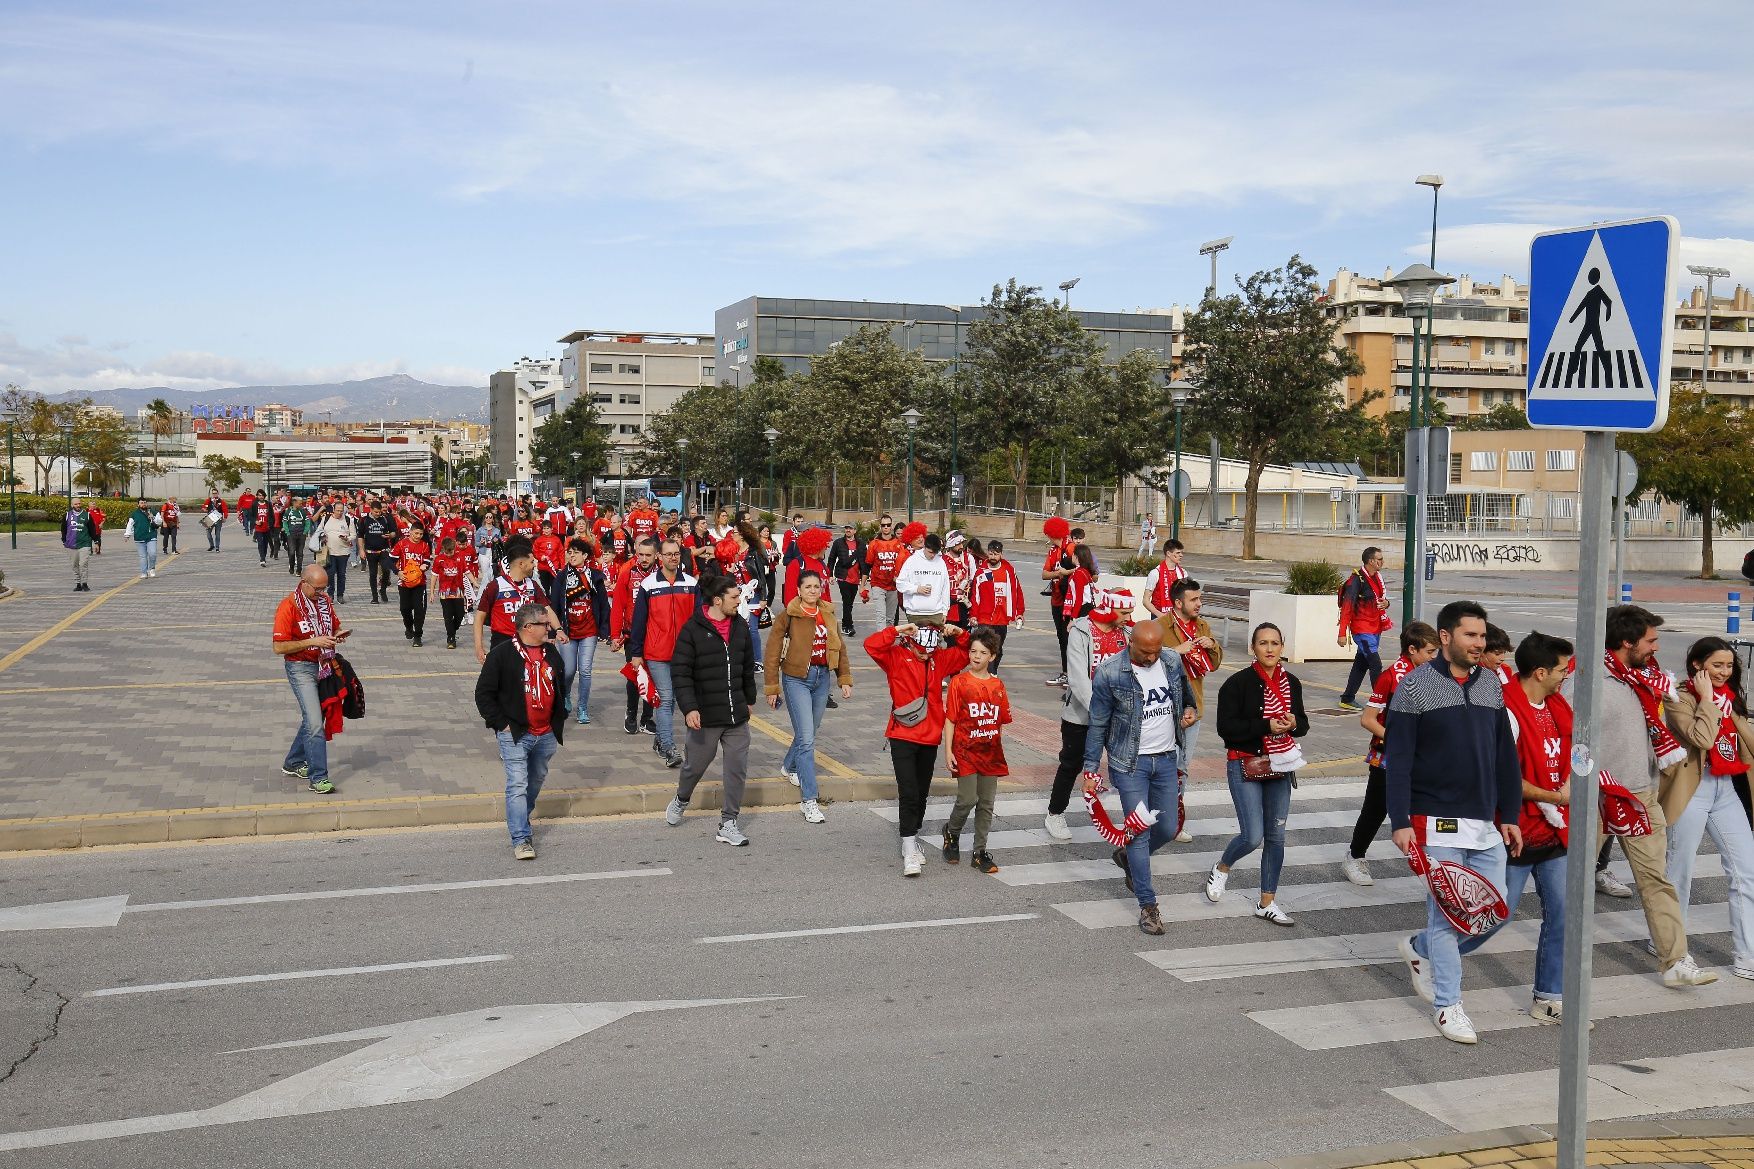 Uns tres-cents aficionats del Baxi Manresa s’apleguen a Màlaga per donar força al Baxi